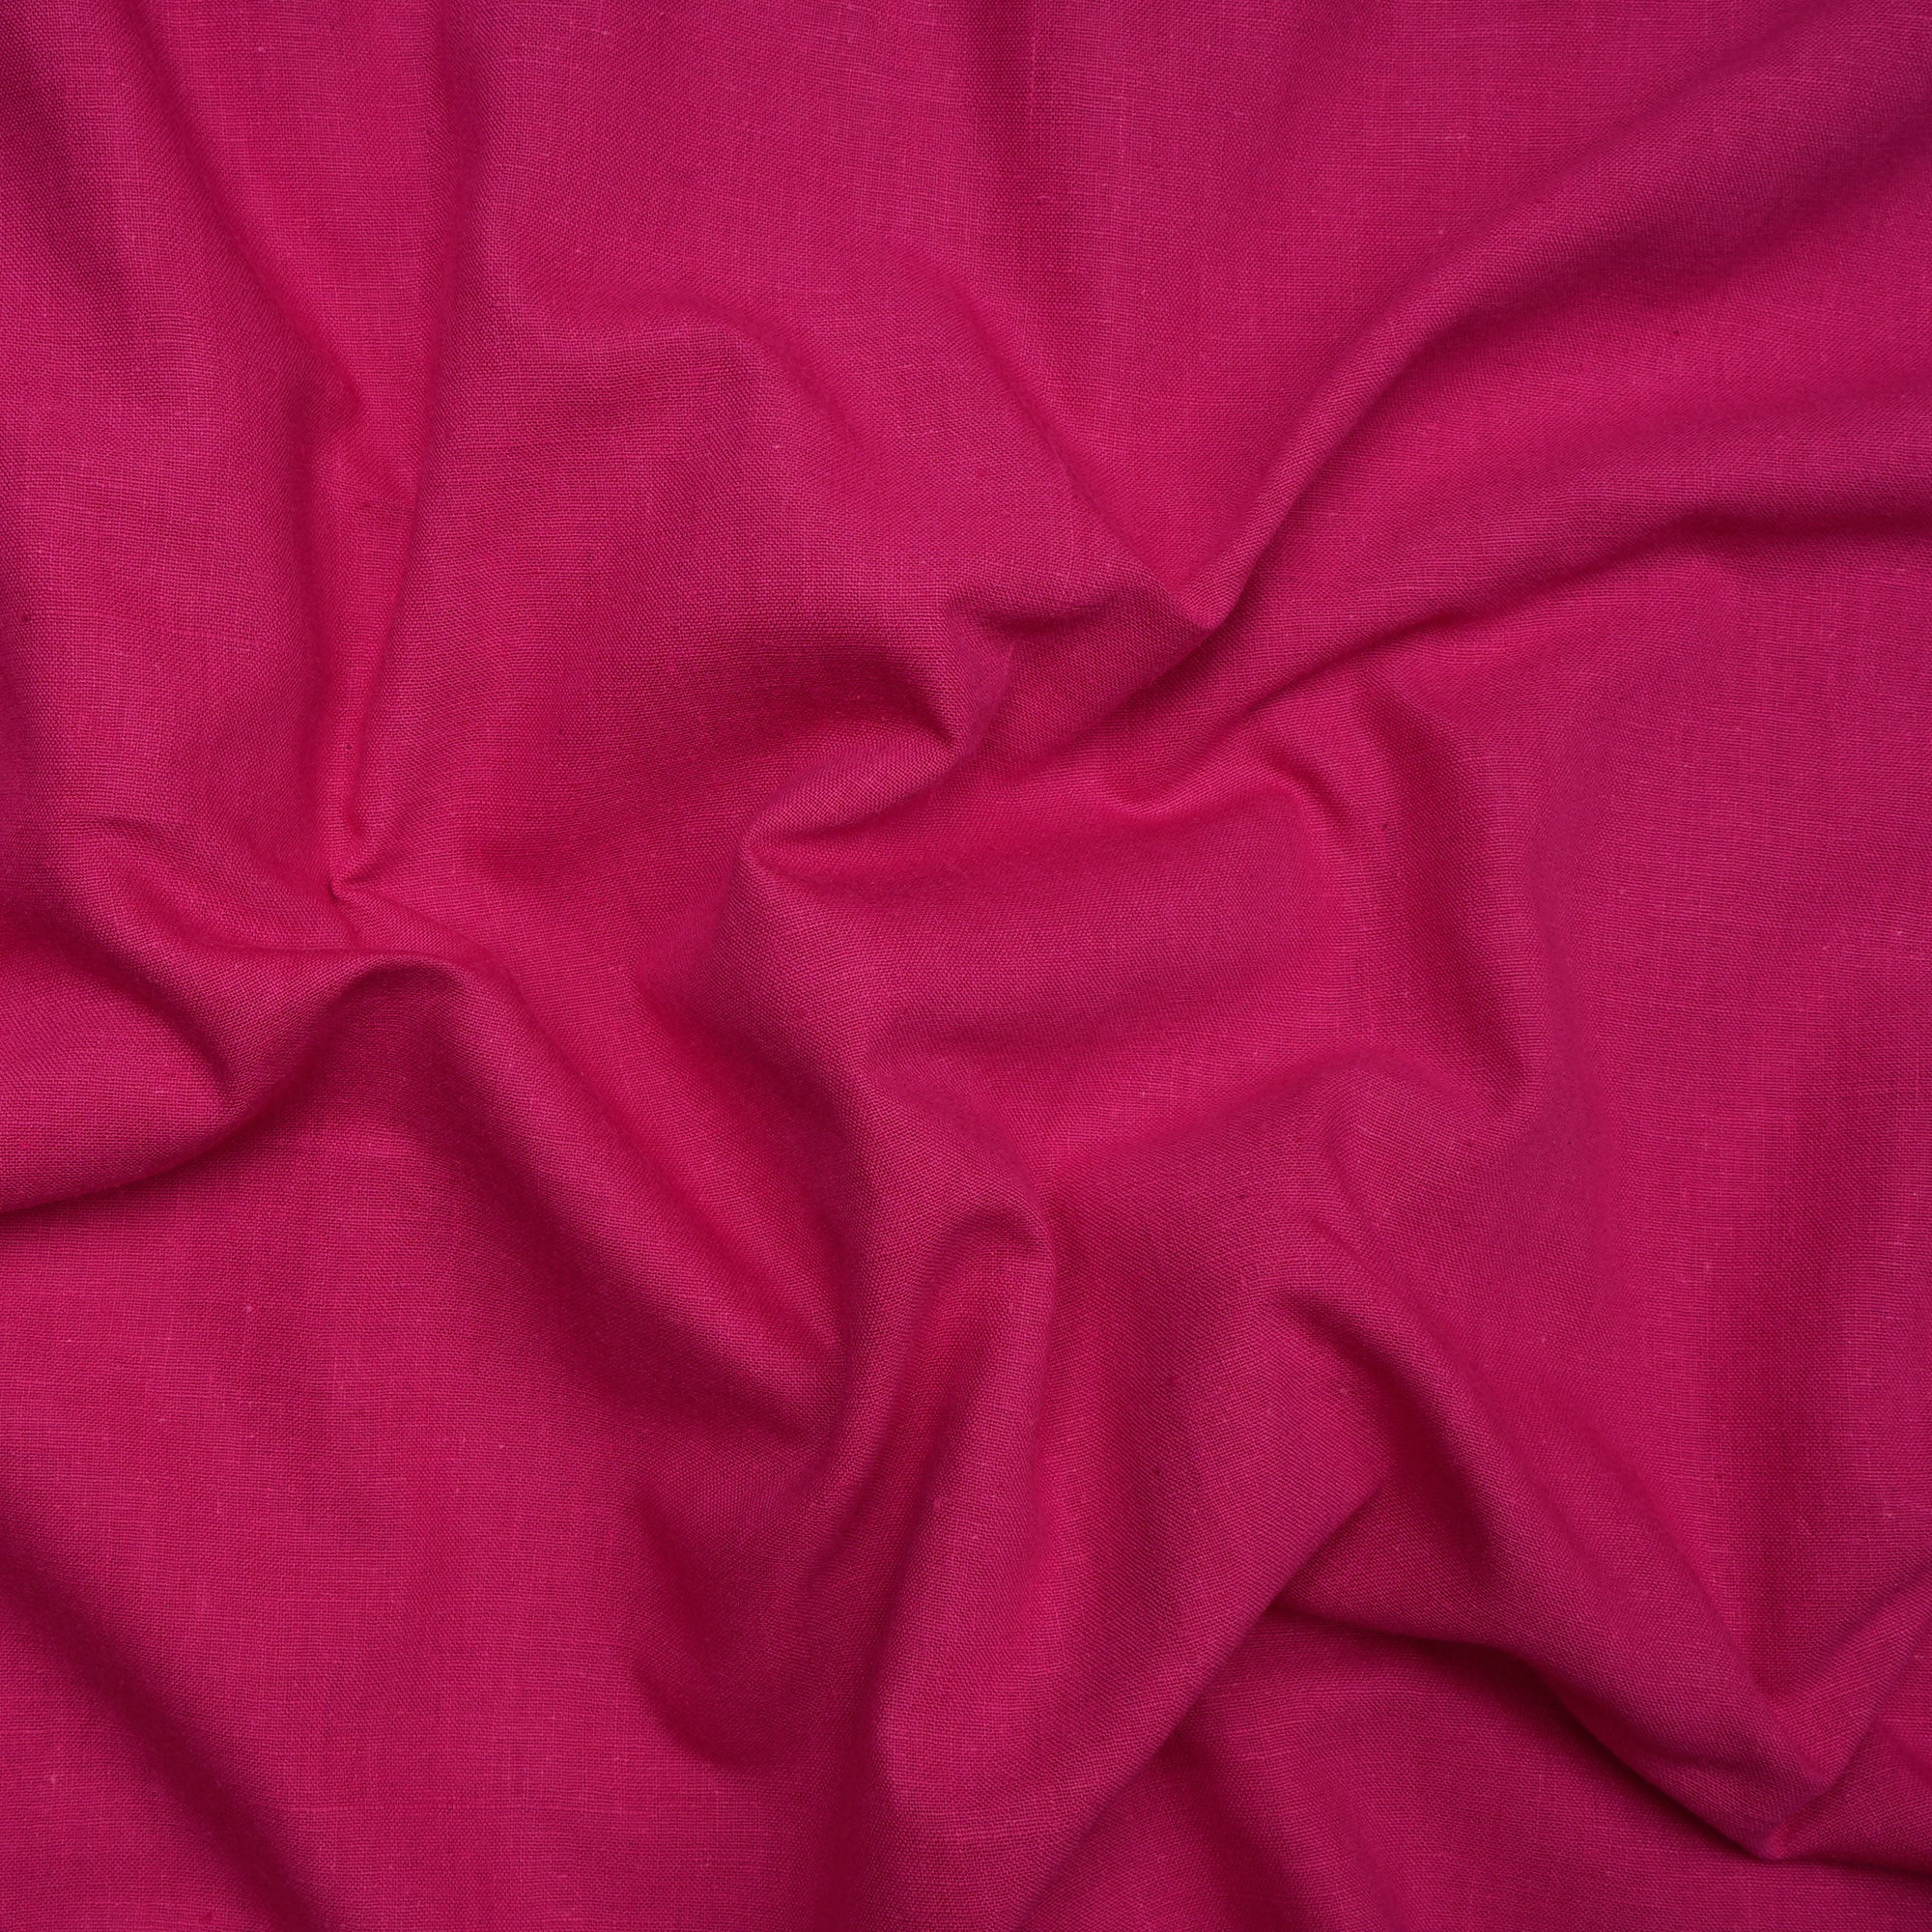 Dark Pink Handspun Handwoven Muslin Cotton FabricCream Handwoven Muslin Cotton Fabric